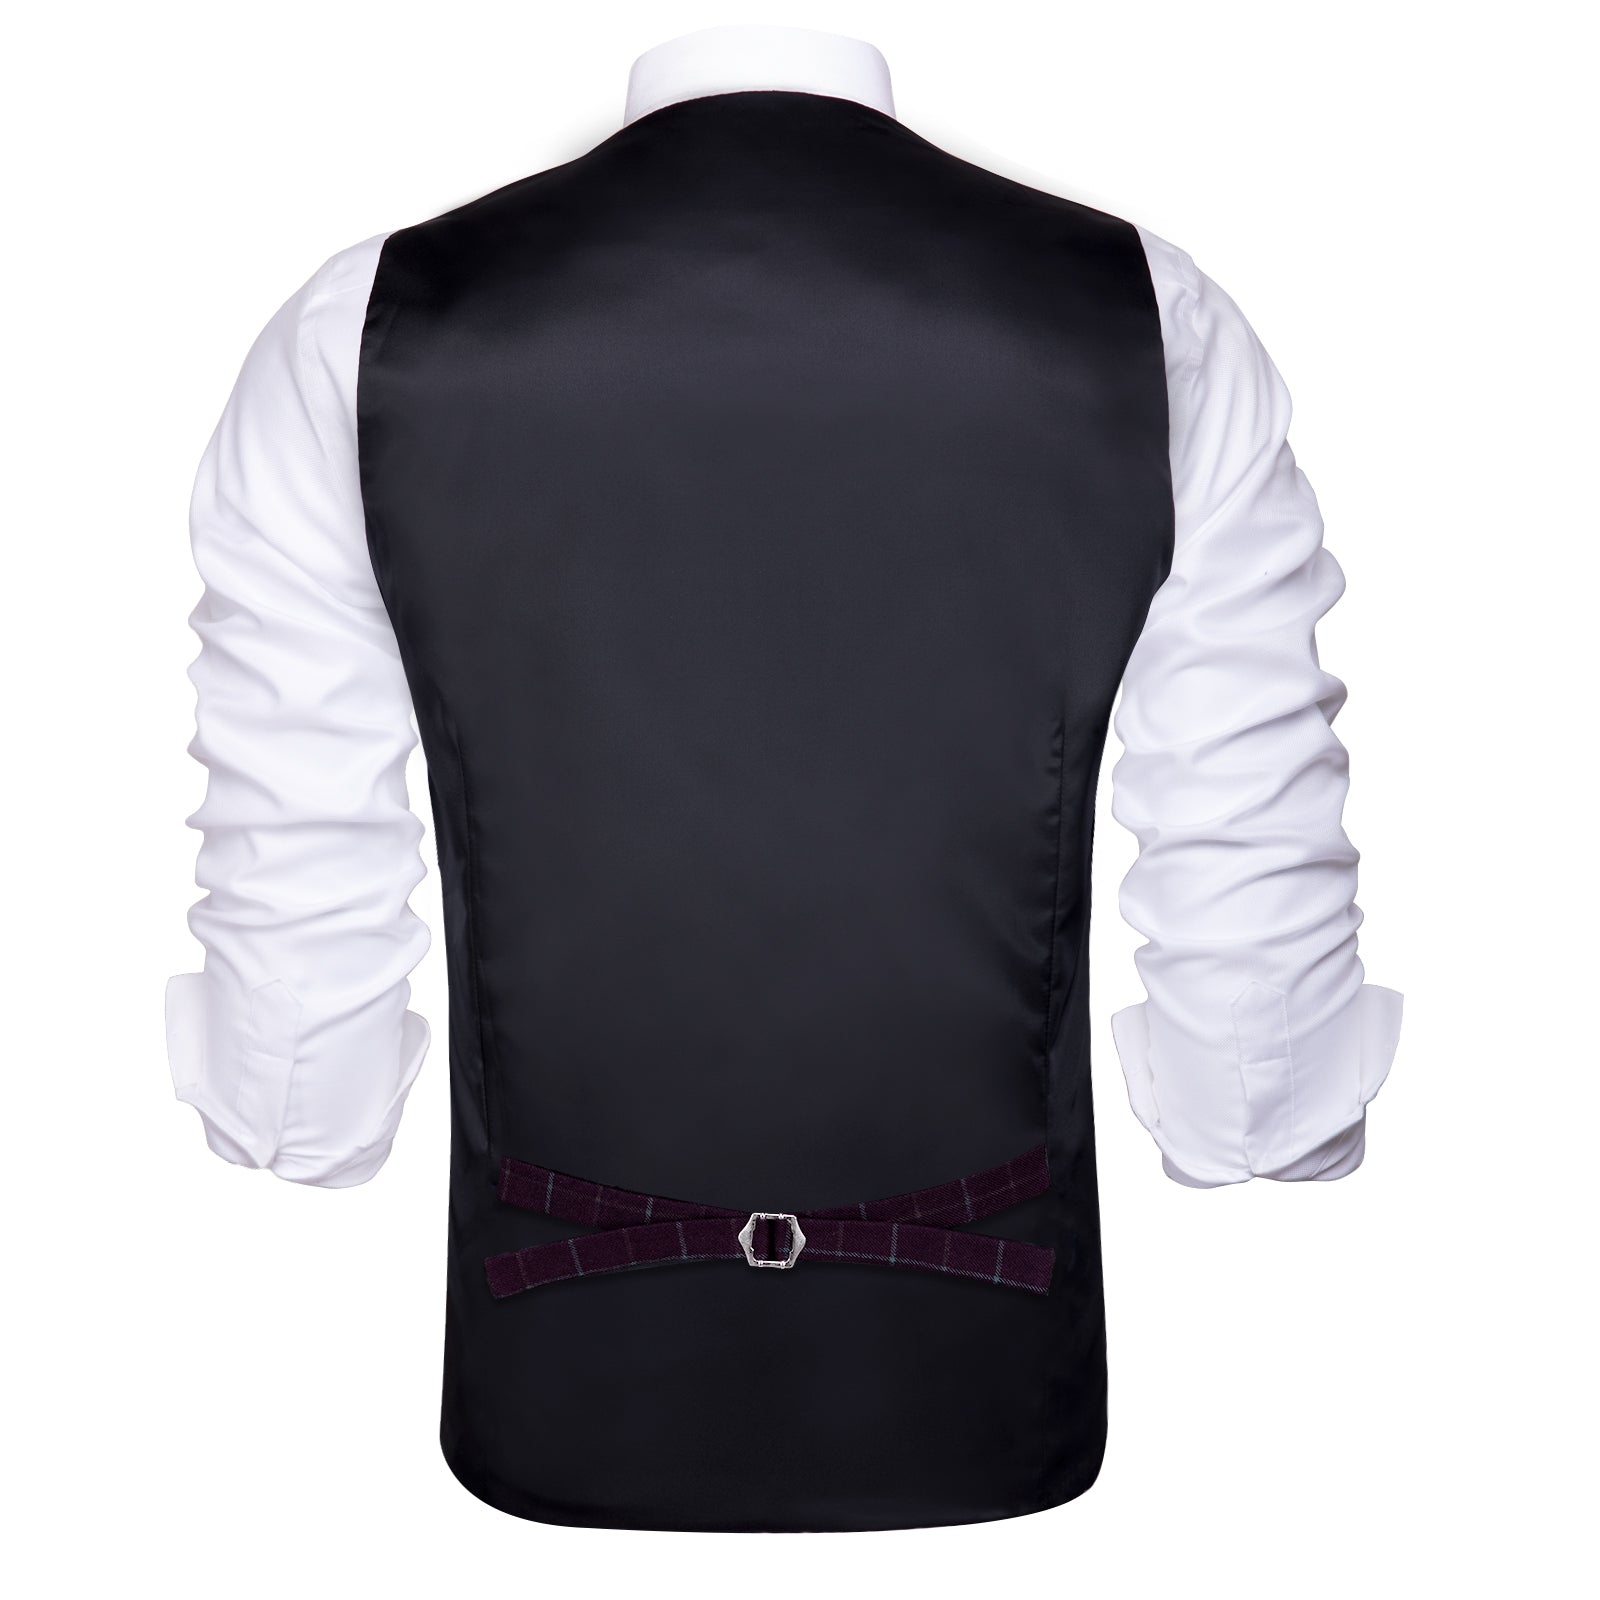 Clearance Sale Burgundy Plaid Men's Vest Hanky Cufflinks Tie Set Waistcoat Suit Set